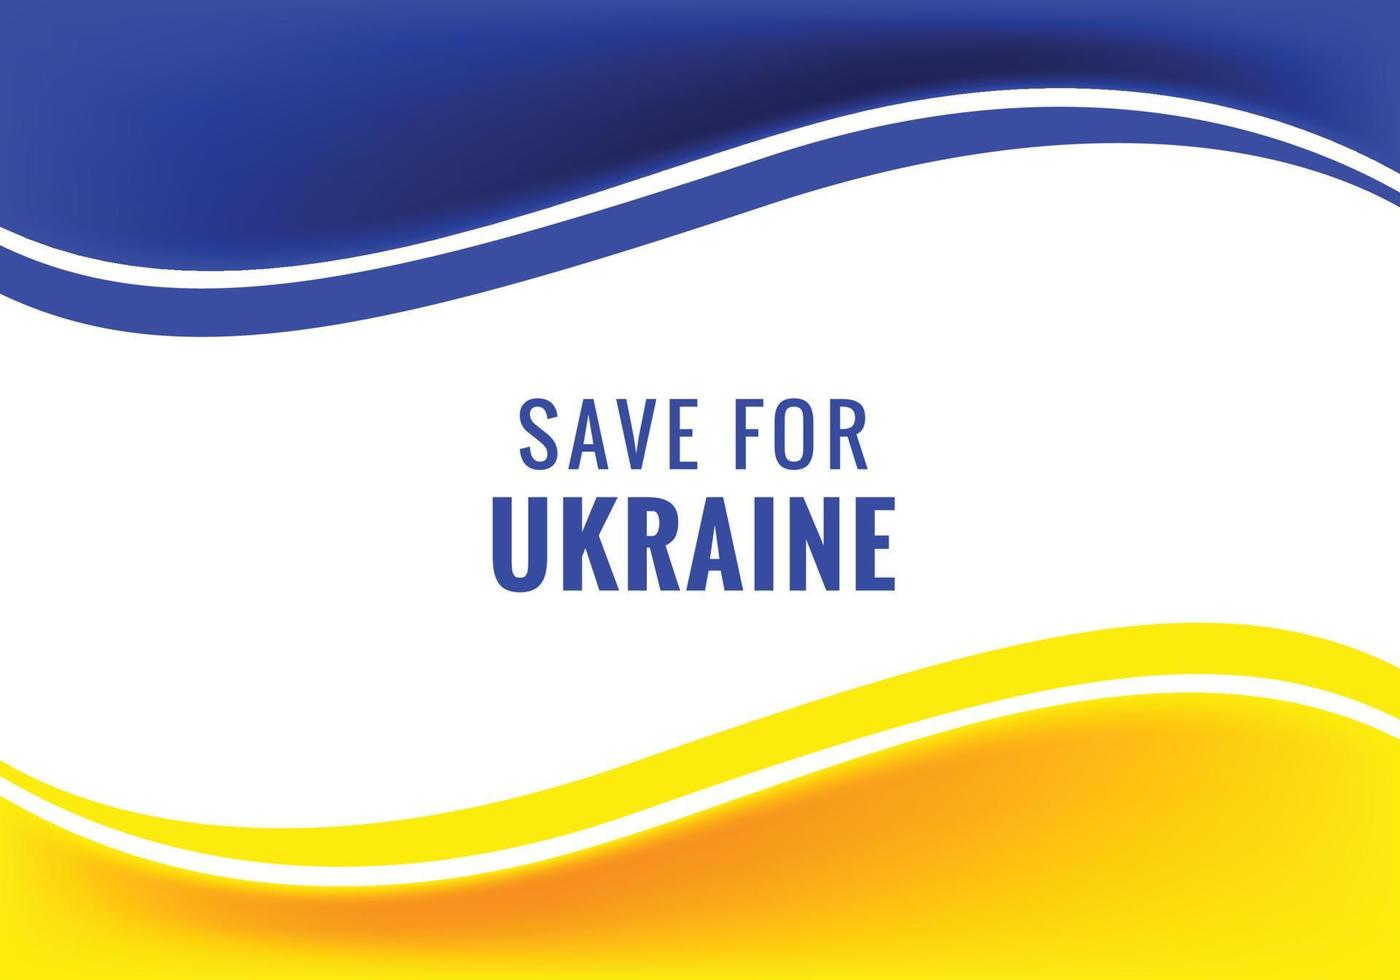 guardar para ucrania texto fondo de tema de bandera de onda moderna vector